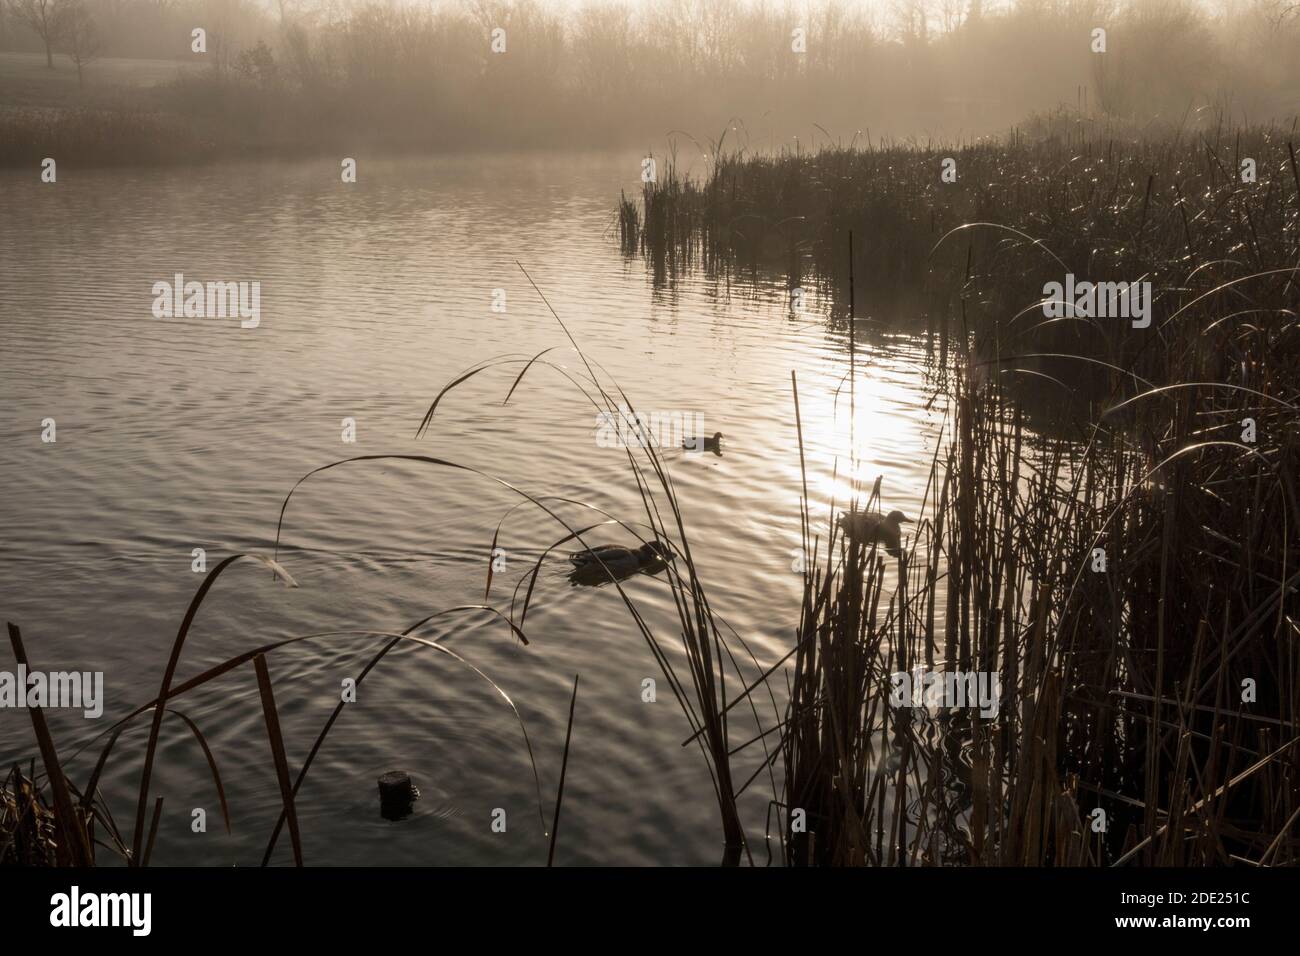 Enten auf frostigen Wasser, contre-jour, Morgenlicht Stockfoto